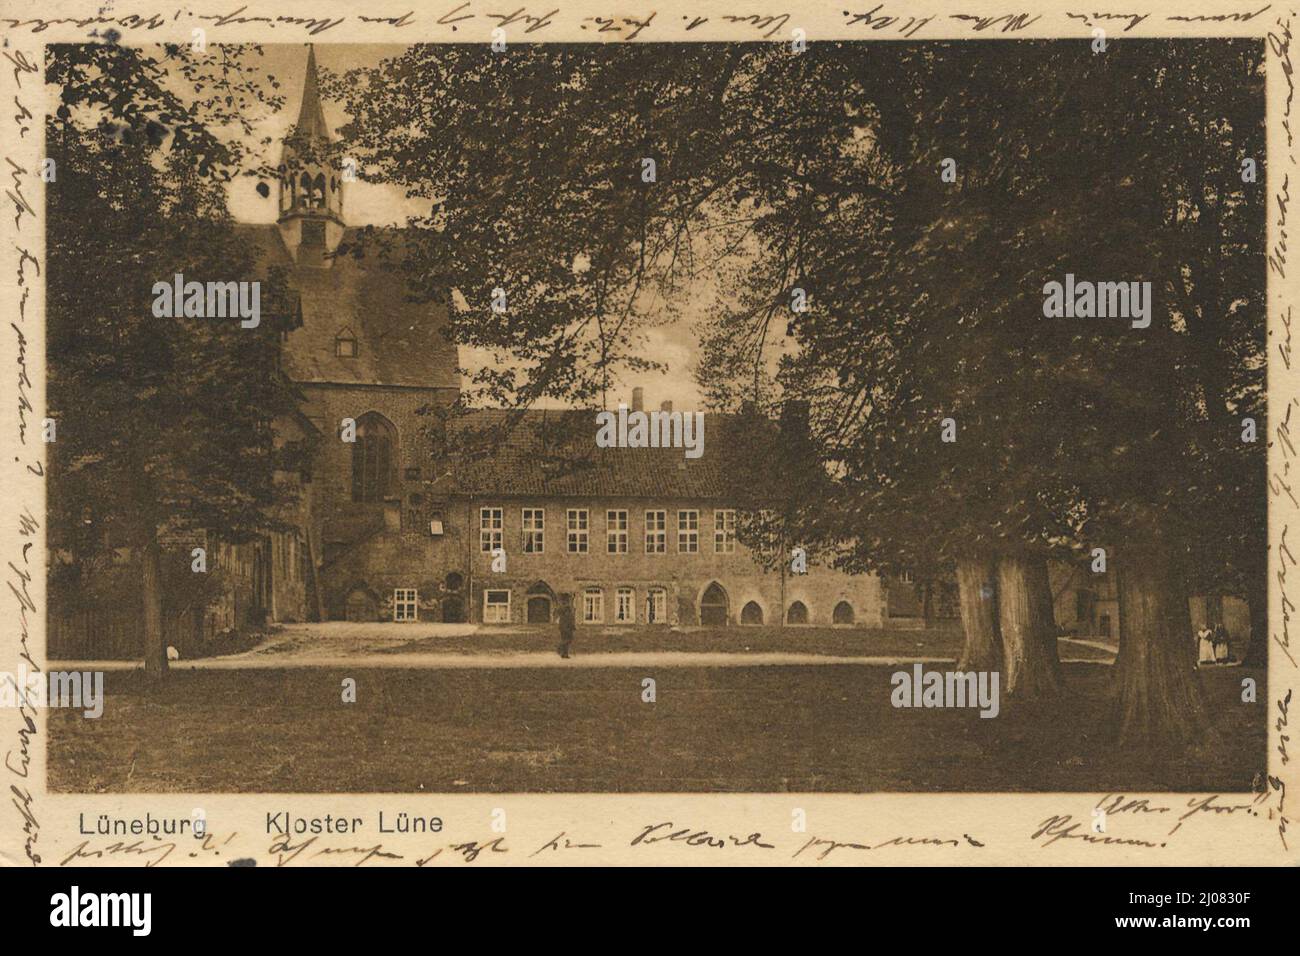 Kloster Lüne in Lüneburg, Niedersachsen, Deutschland, Ansicht um ca 1910, digitale Reproduktion einer historischen Postkarte, public domain, aus der damaligen Zeit, genaues Datum unbekannt Stock Photo